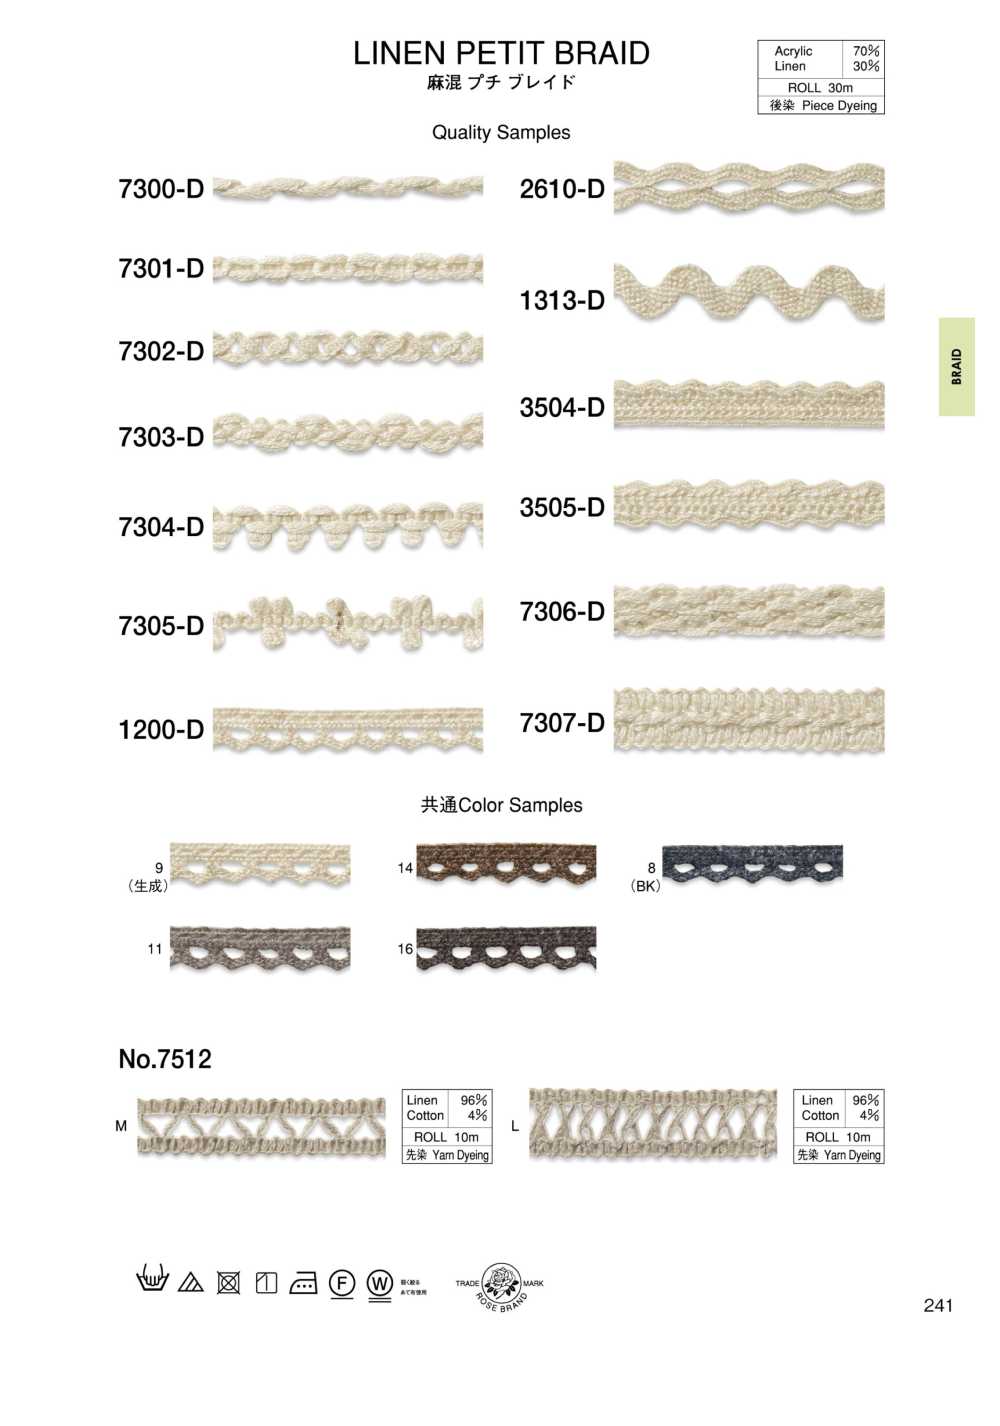 7302-D Linen Blend Petite Braid[Ribbon Tape Cord] ROSE BRAND (Marushin)